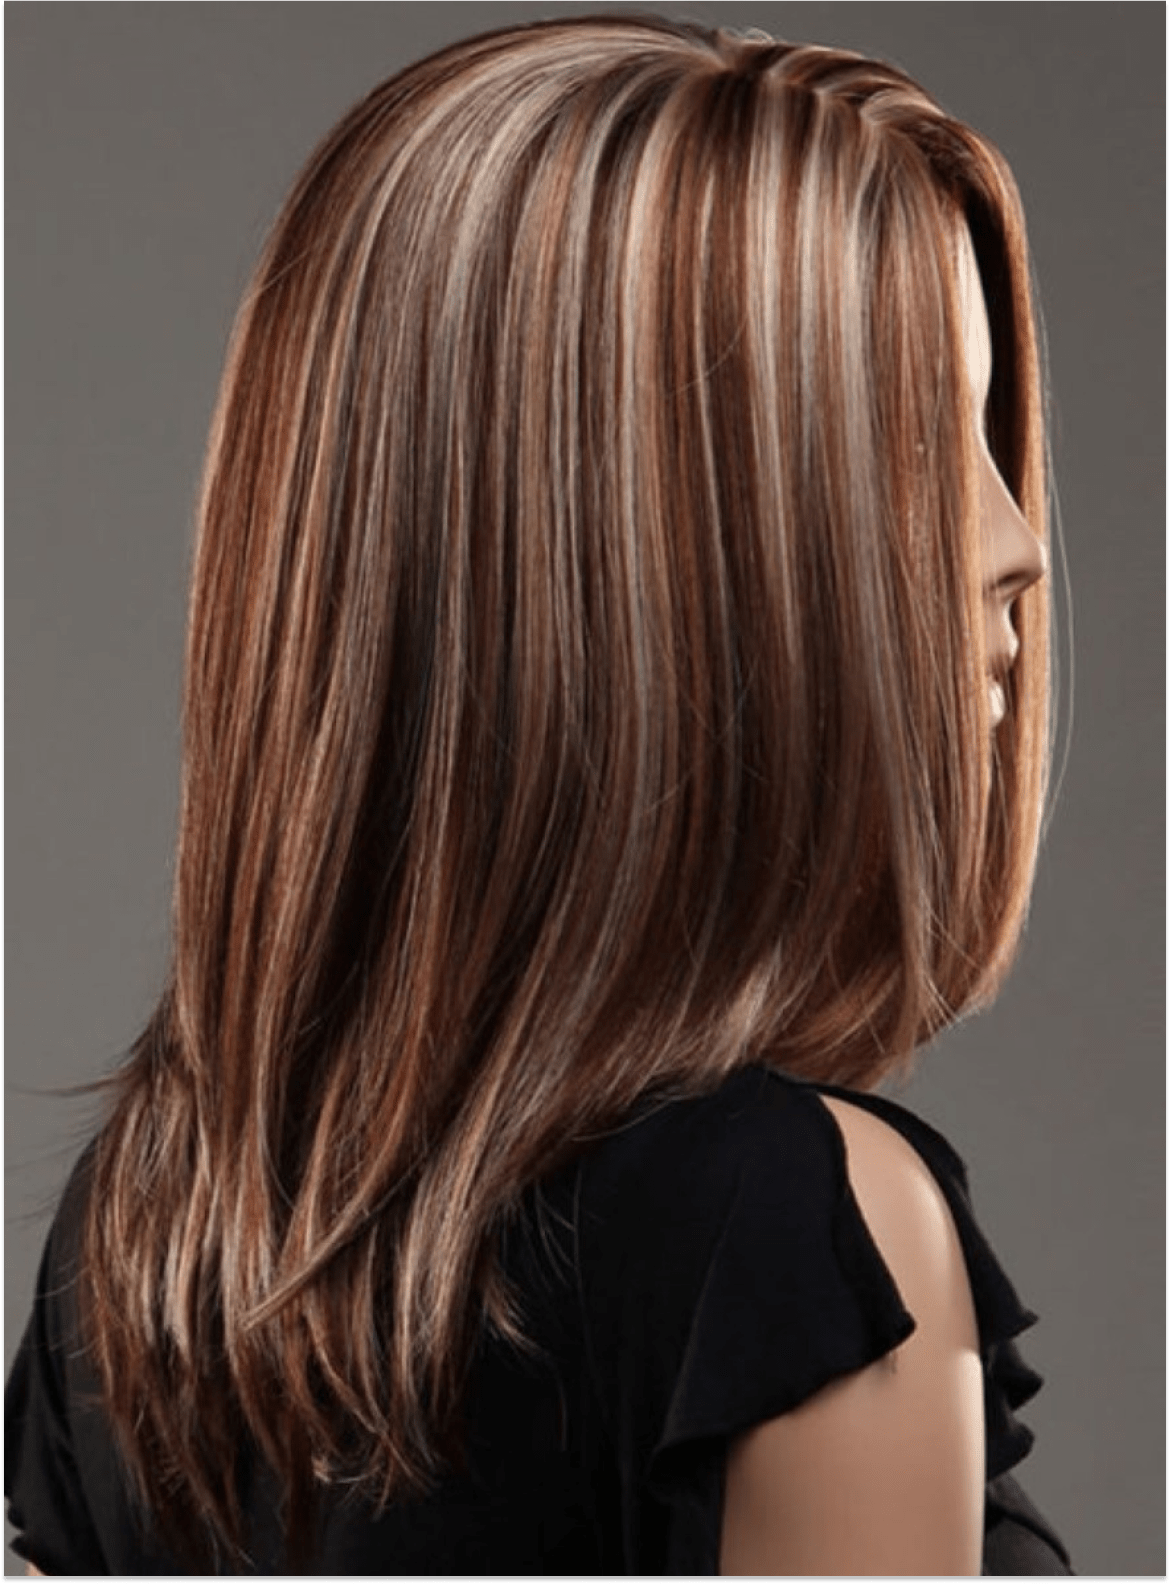 Виды мелирования волос на русые волосы средней длины фото